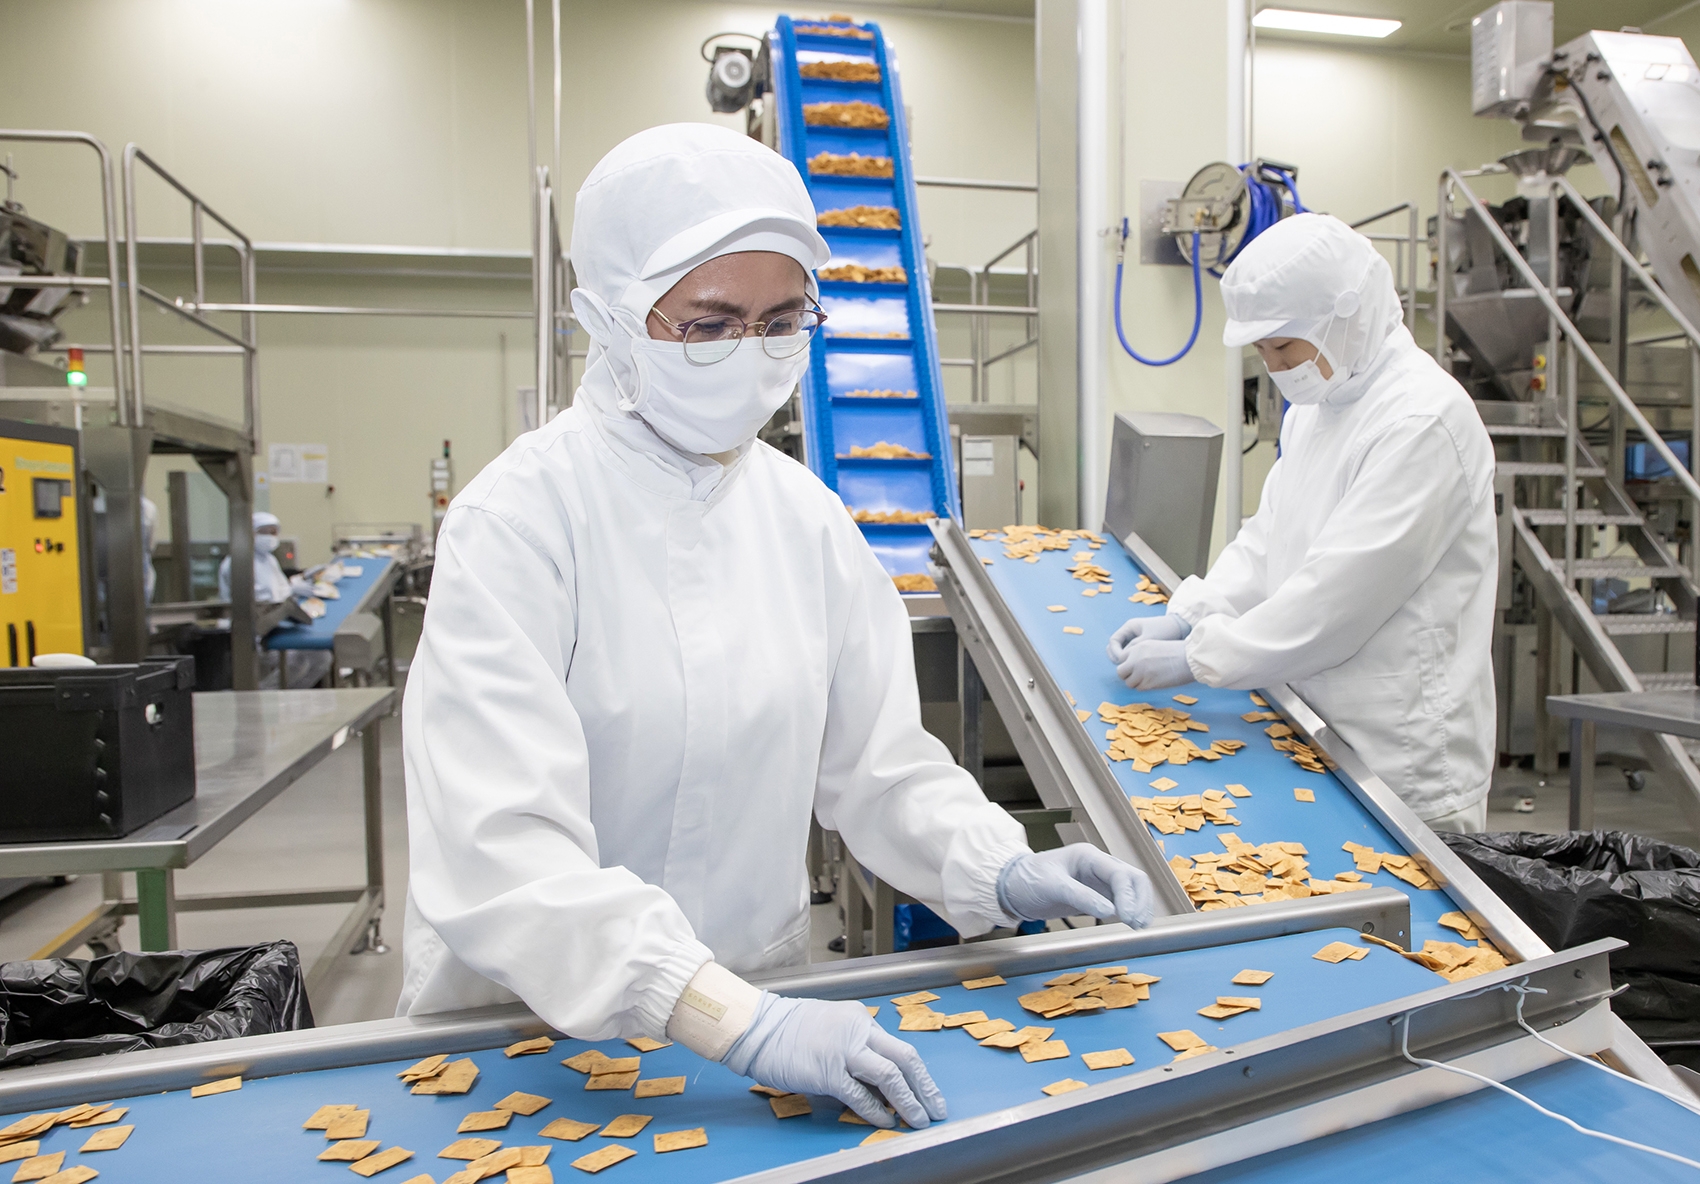 전라남도 여수에 위치한 식품기업 '쿠키아'에서 삼성전자 스마트공장 담당자(오른쪽)과 쿠키아 직원이 두부과자 품질 상태를 점검하고 있다. 사진 제공=삼성전자